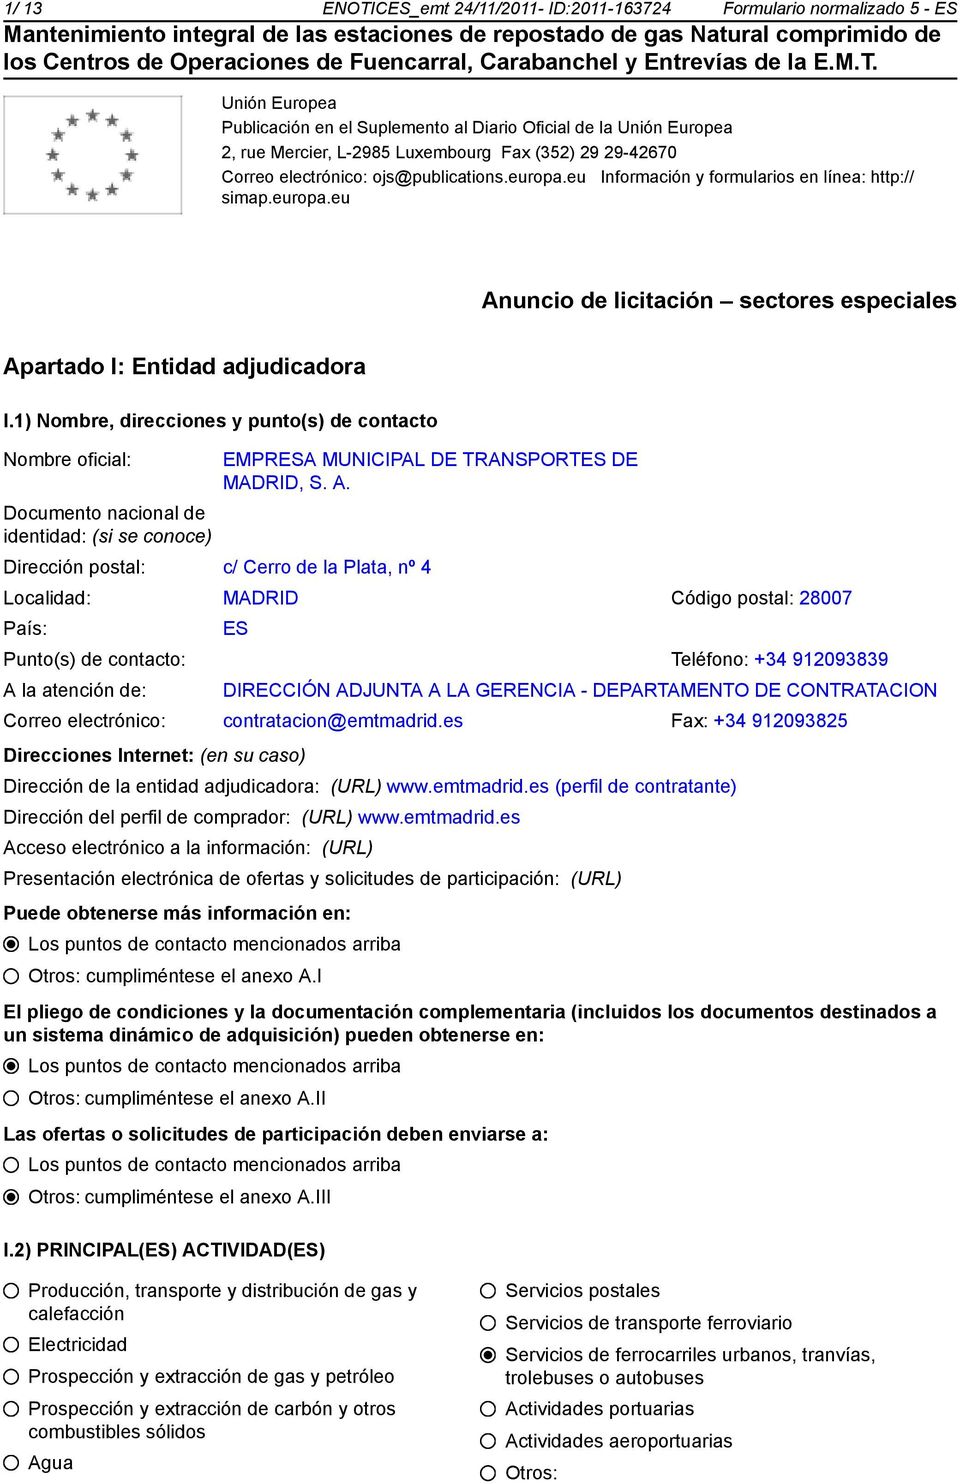 1) Nombre, direcciones y punto(s) de contacto Documento nacional de identidad: (si se coce) EMPRESA MUNICIPAL DE TRANSPORTES DE MADRID, S. A.